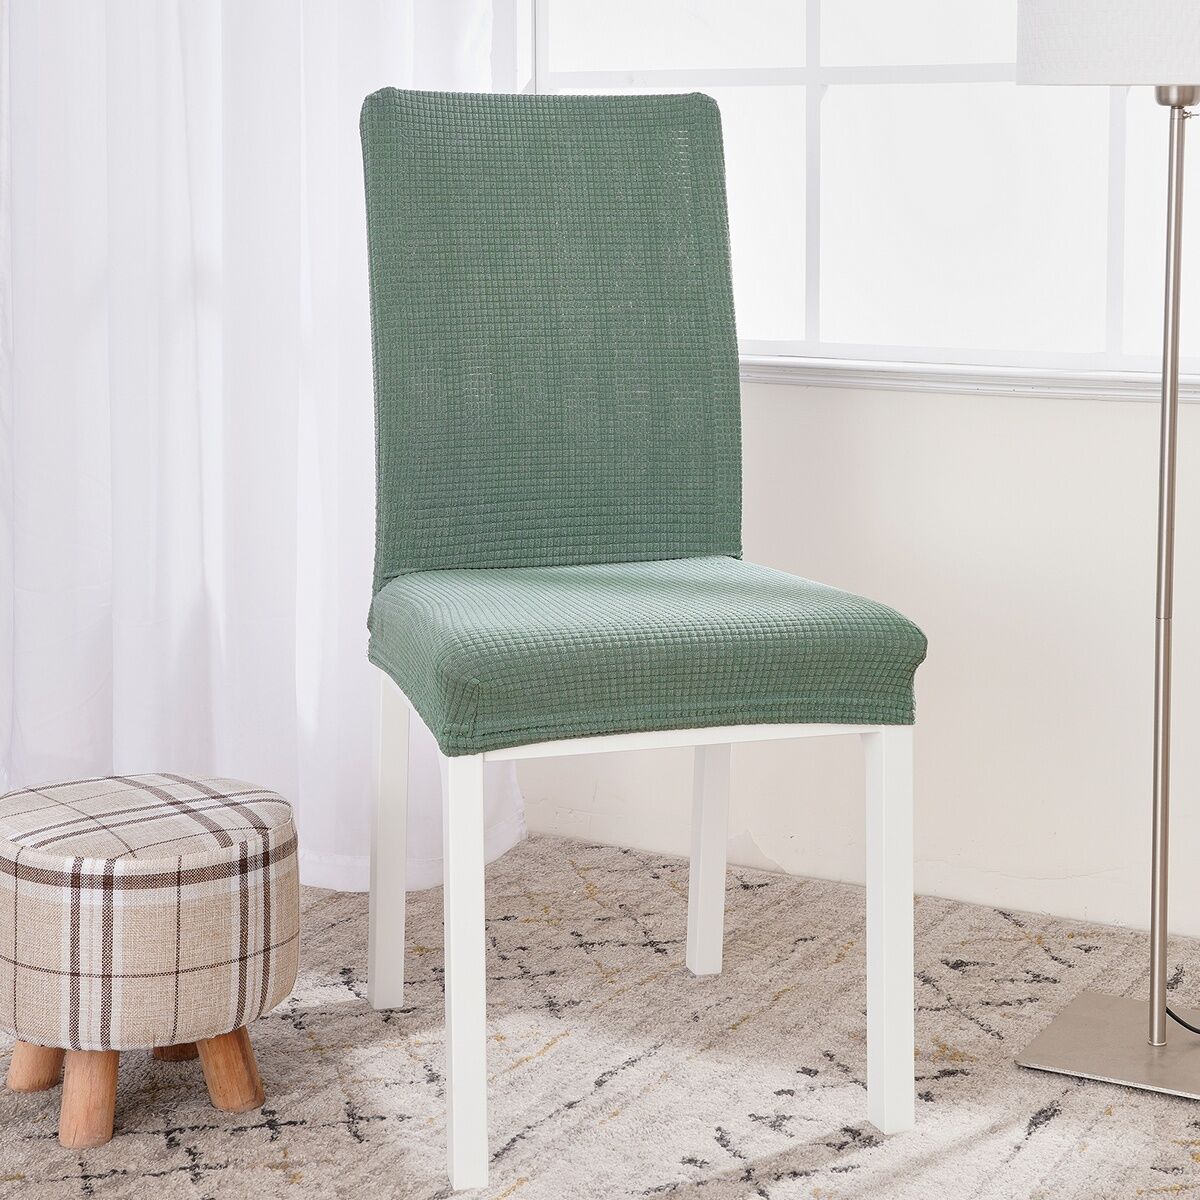 4Home Elastyczny wodoodporny pokrowiec na krzesło Magic clean zielony, 45 - 50 cm, komplet 2 szt.